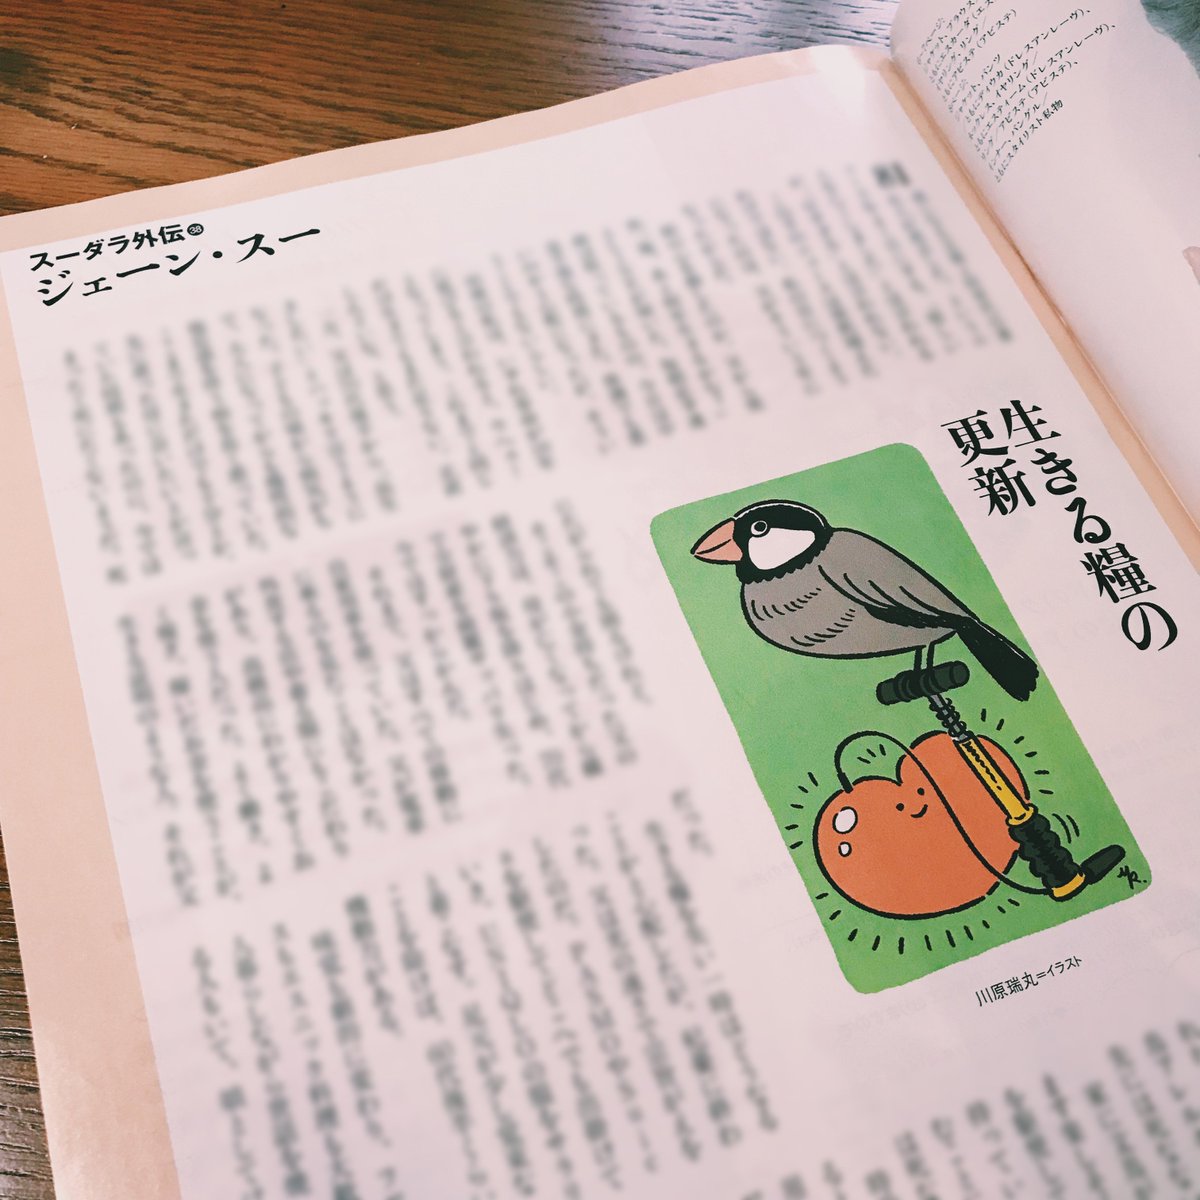 婦人公論のジェーン・スーさん連載では文鳥を描きました。 